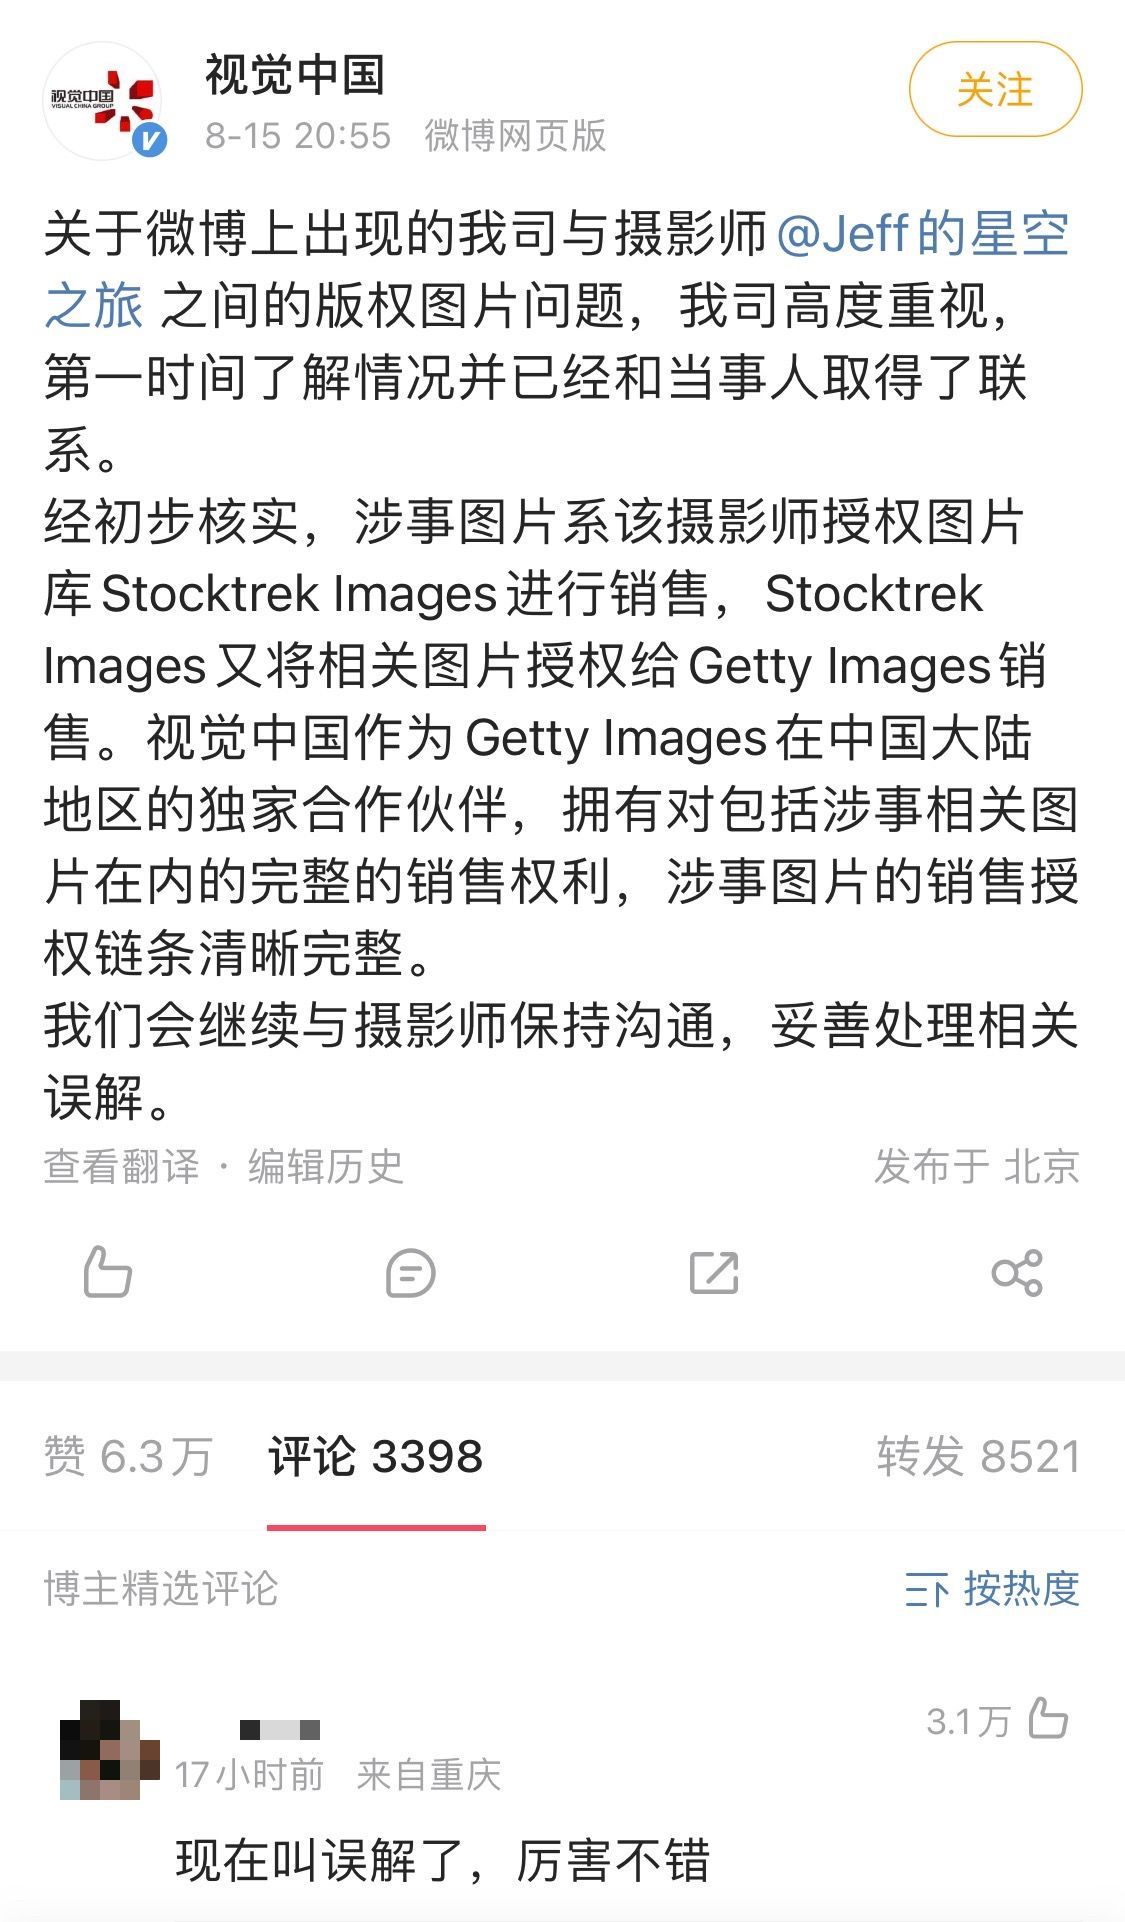 摄影师原创照片被视觉中国指控侵权要求赔偿8万事件完整吃瓜及舆论分析 - 知乎